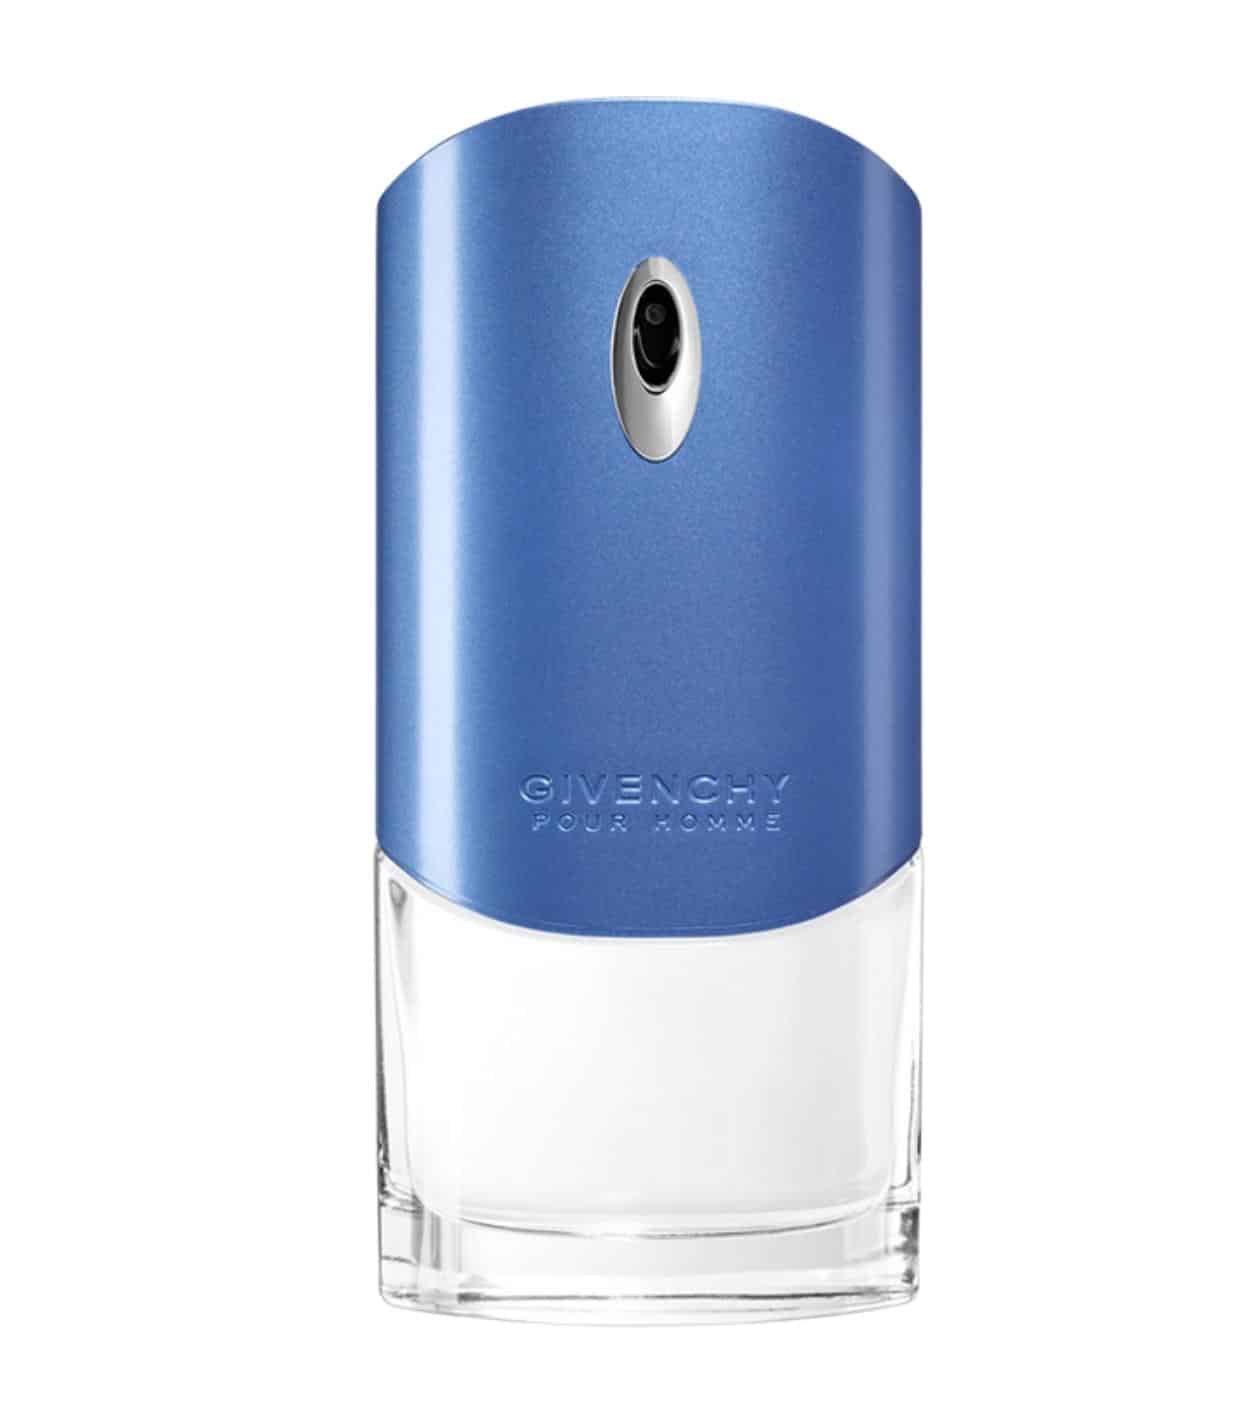 Most Popular Men’s Cologne In A Blue Bottle - FragranceReview.com